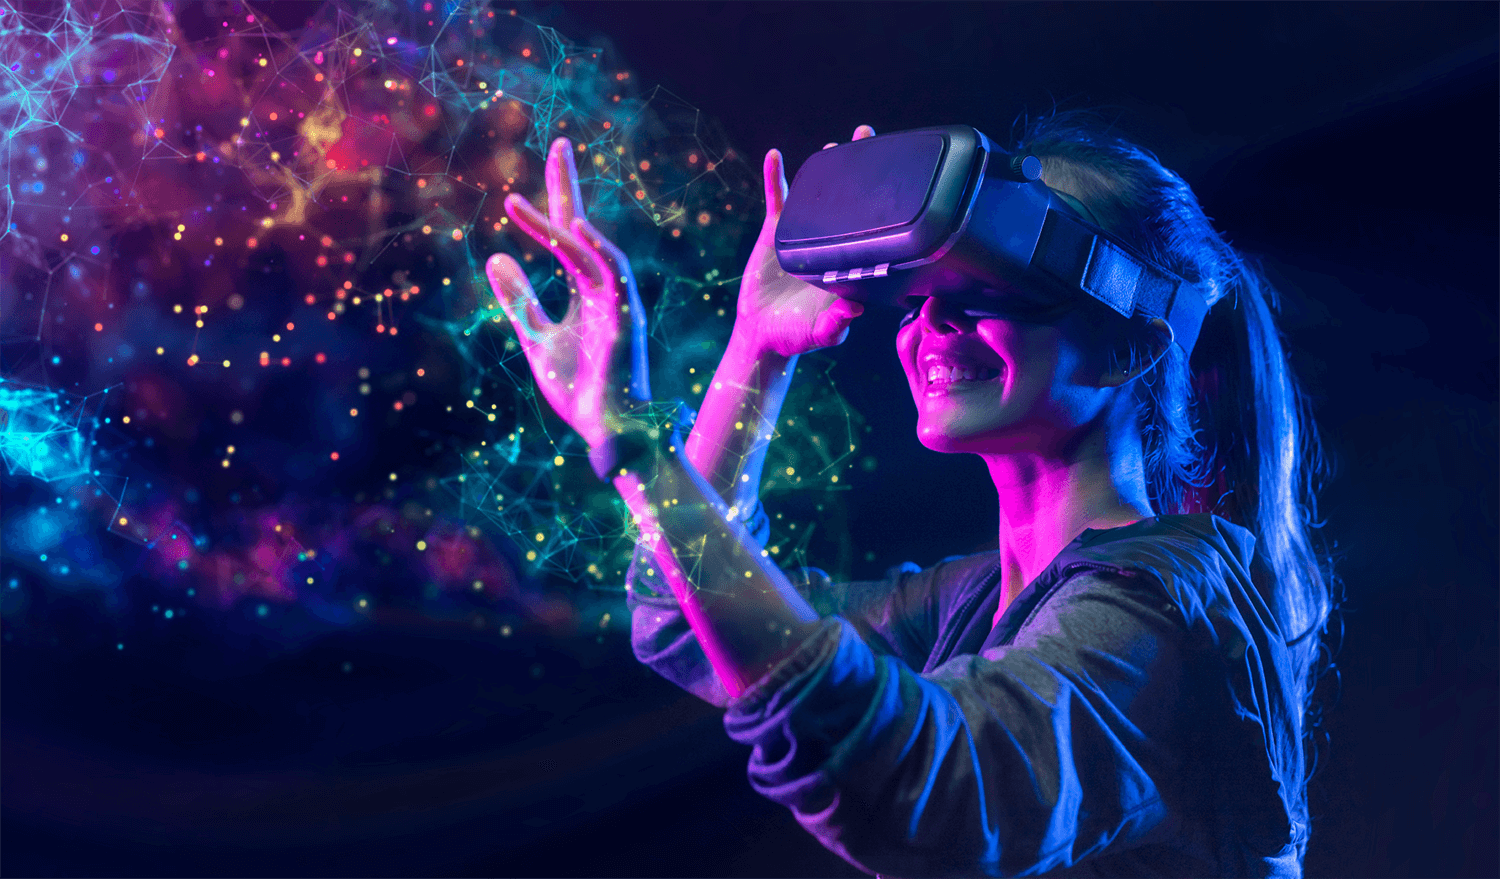 图片展示一位女性戴着虚拟现实头盔，似乎在体验沉浸式VR环境，她面前是绚丽的数字化图案。